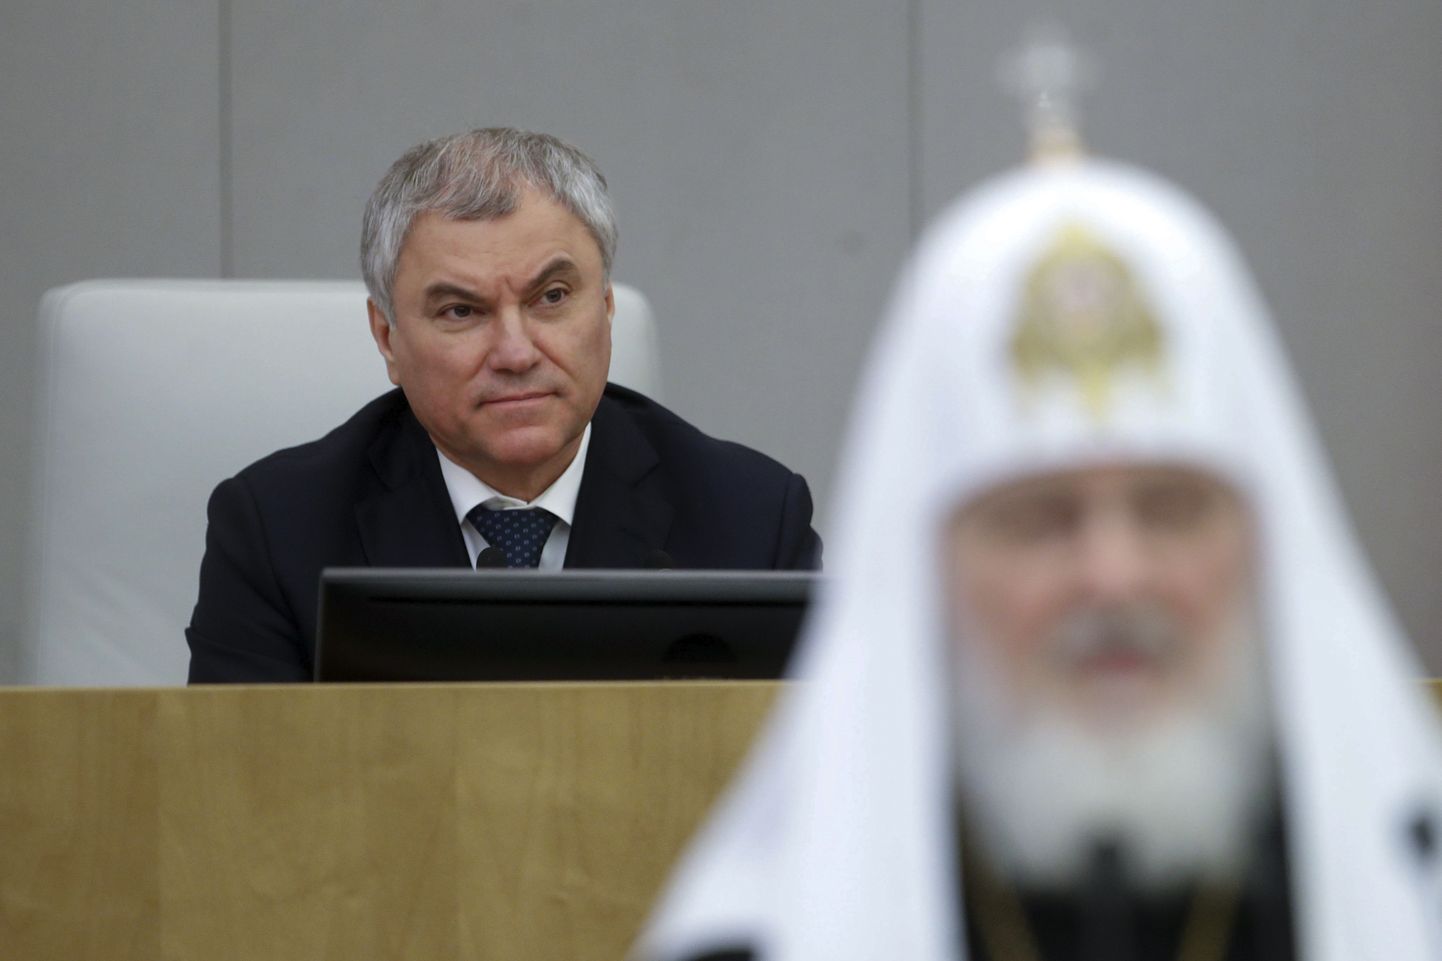 Вячеслав Володин ведет заседание Госдумы на котором выступает патриарх РПЦ МП Кирилл, 26 января 2023 года.